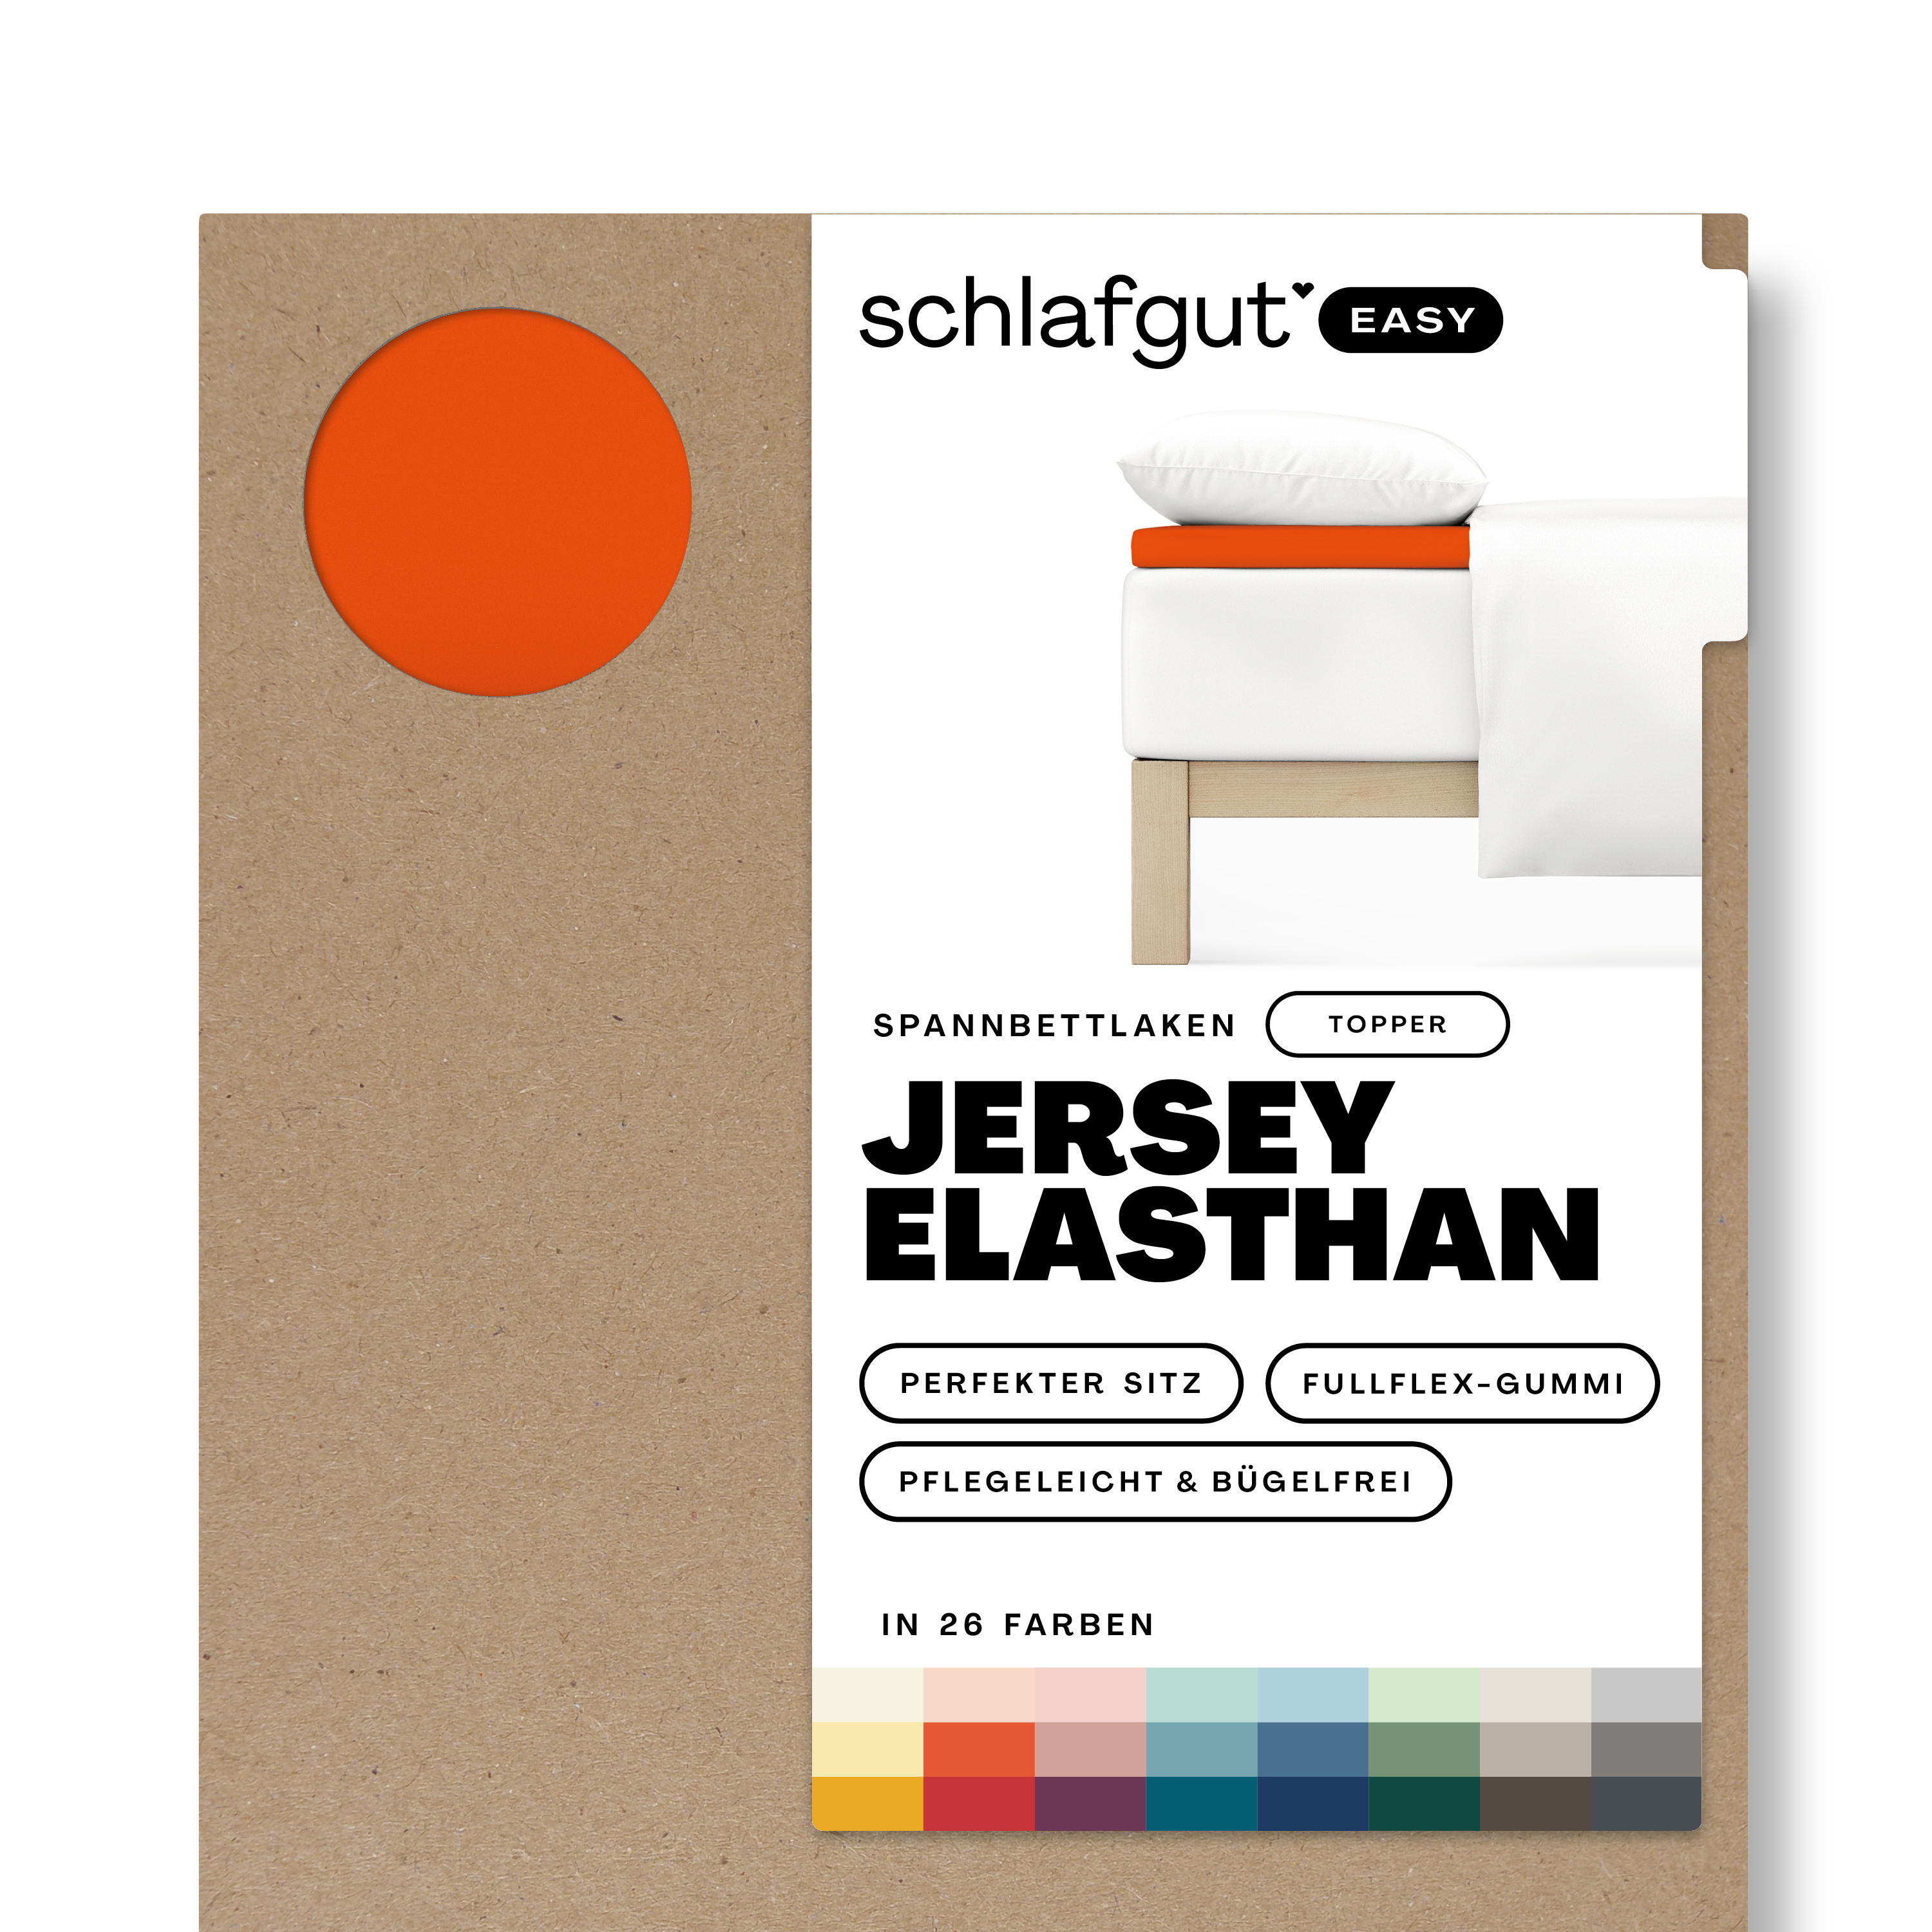 Das Produktbild vom Spannbettlaken der Reihe Easy Elasthan Topper in Farbe red mid von Schlafgut